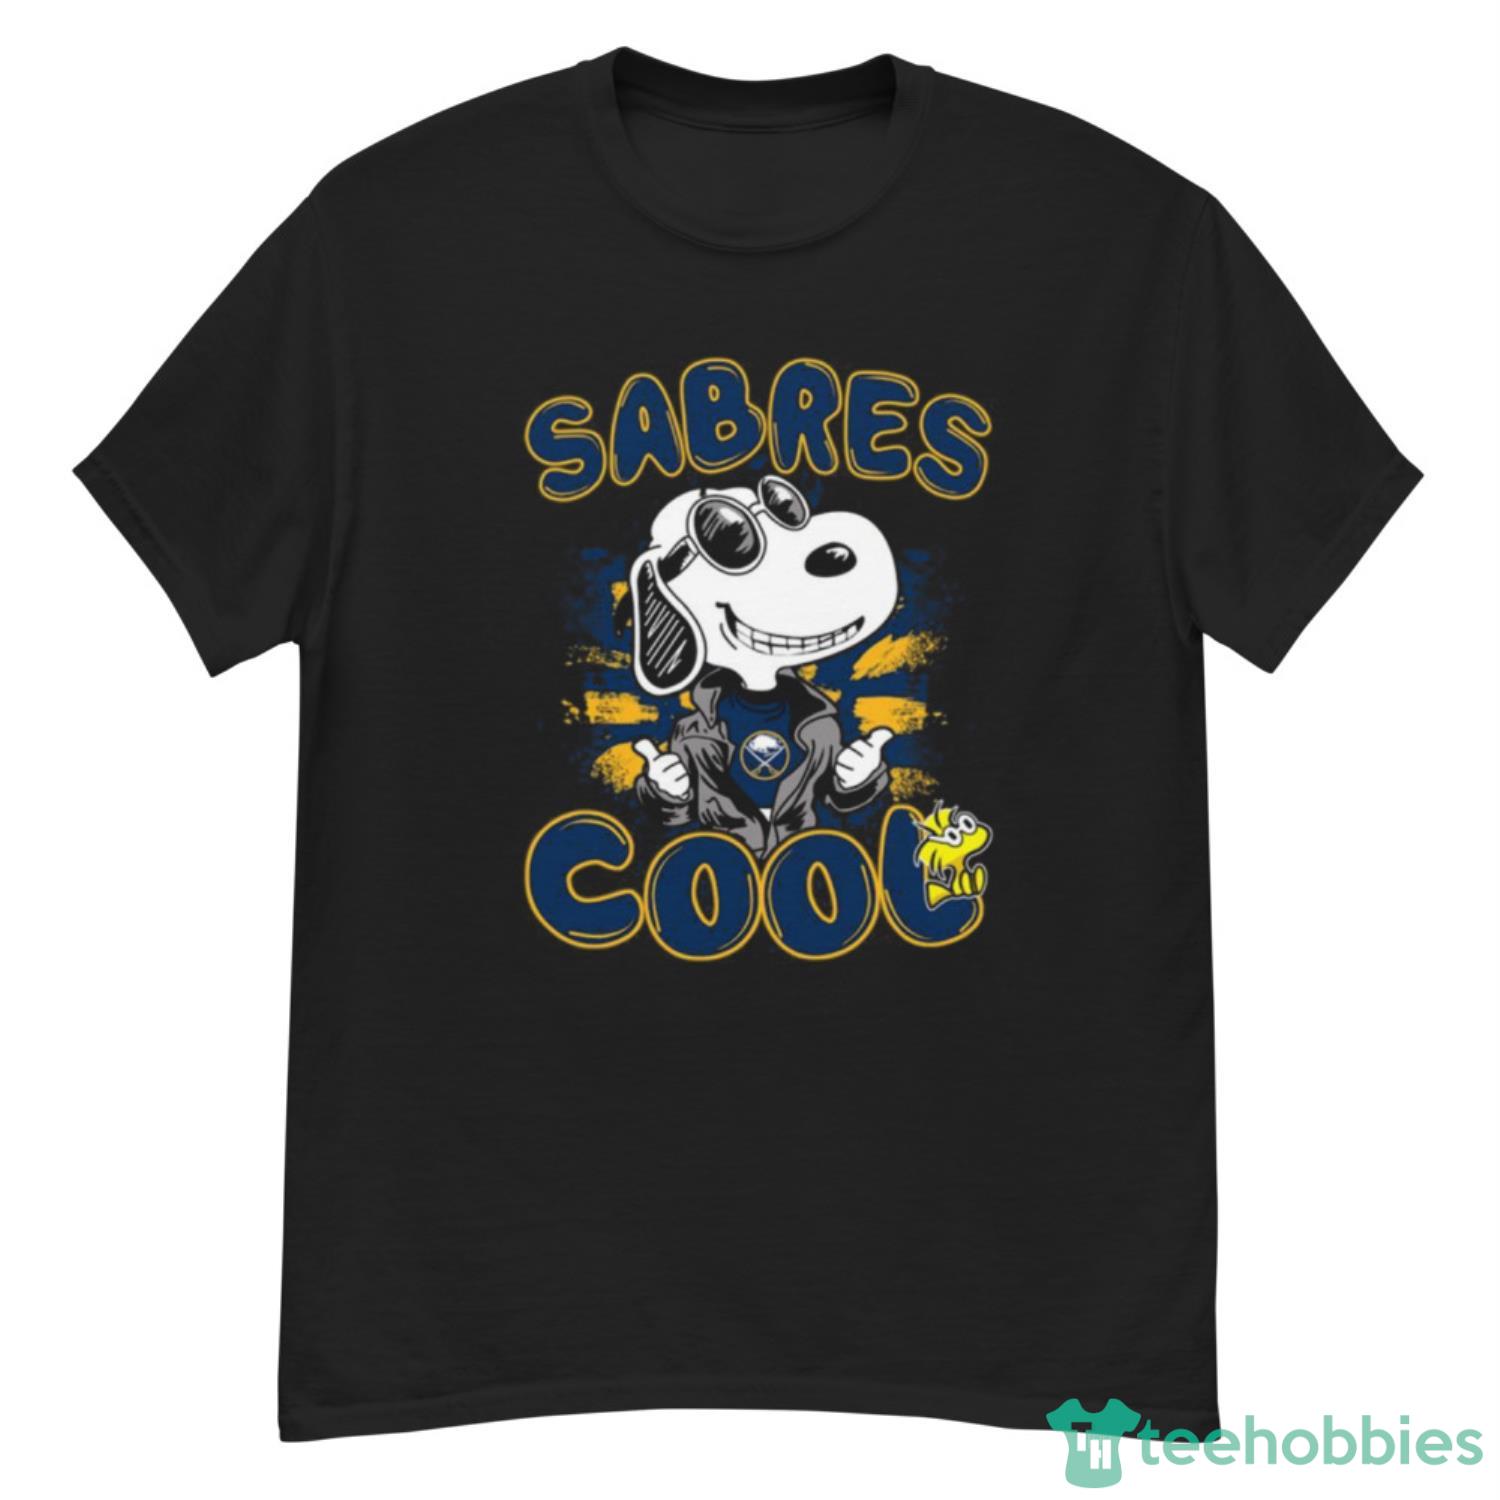 NHL Hockey Buffalo Sabres Cool Snoopy Shirt T Shirt - G500 Men’s Classic T-Shirt